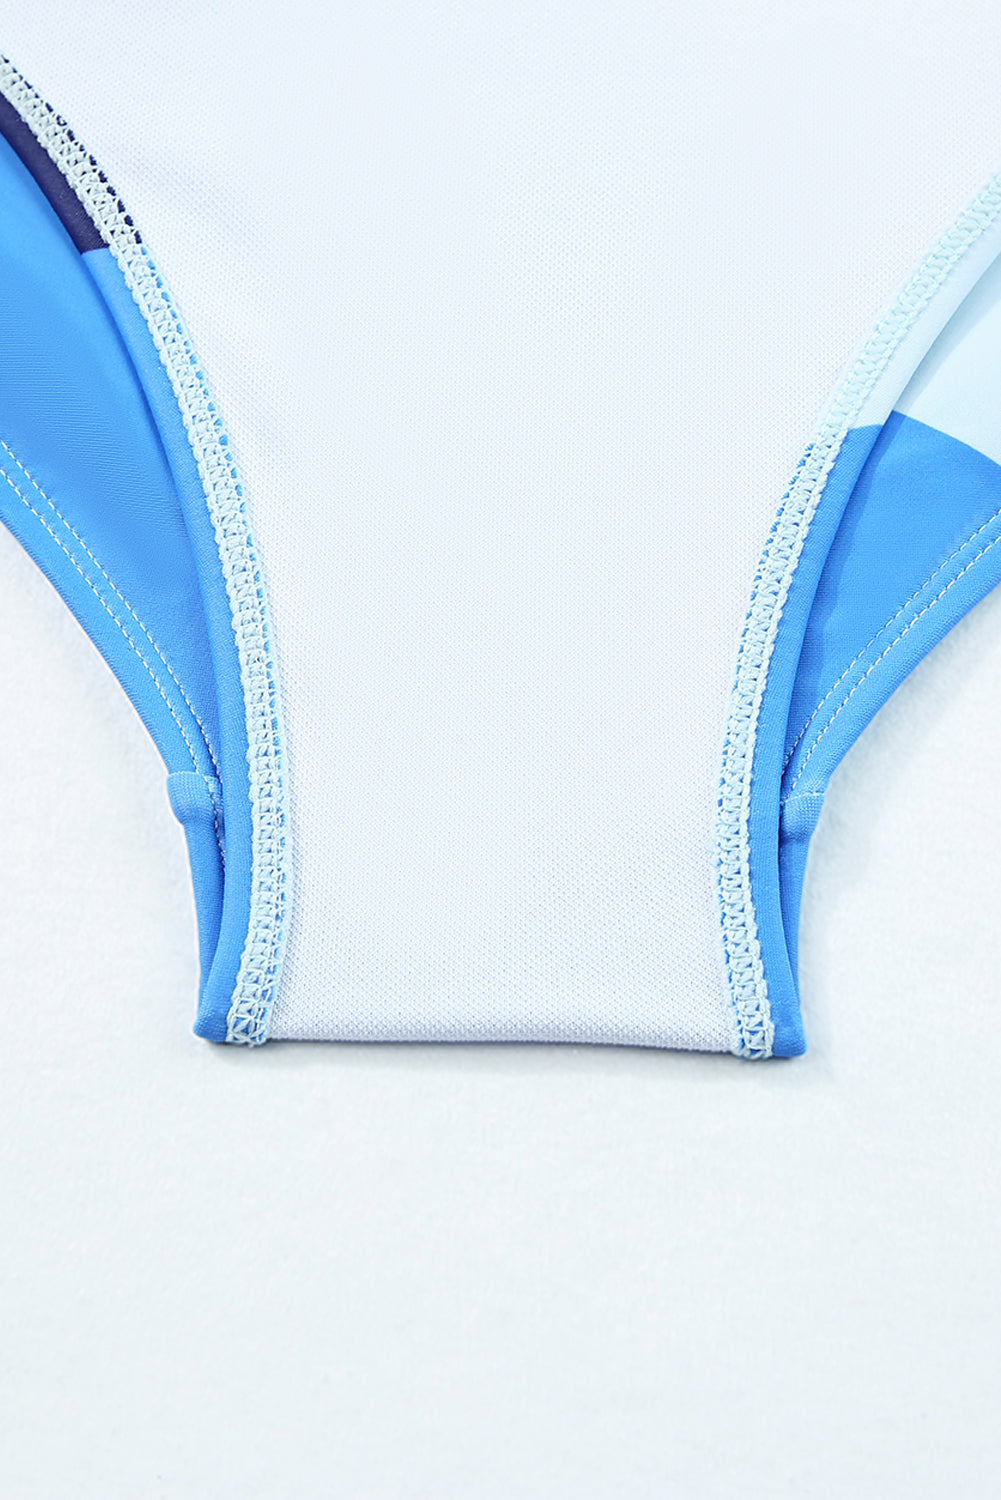 Himmelblauer, bedruckter Badeanzug mit Farbblock und Kordelzug an den Seiten